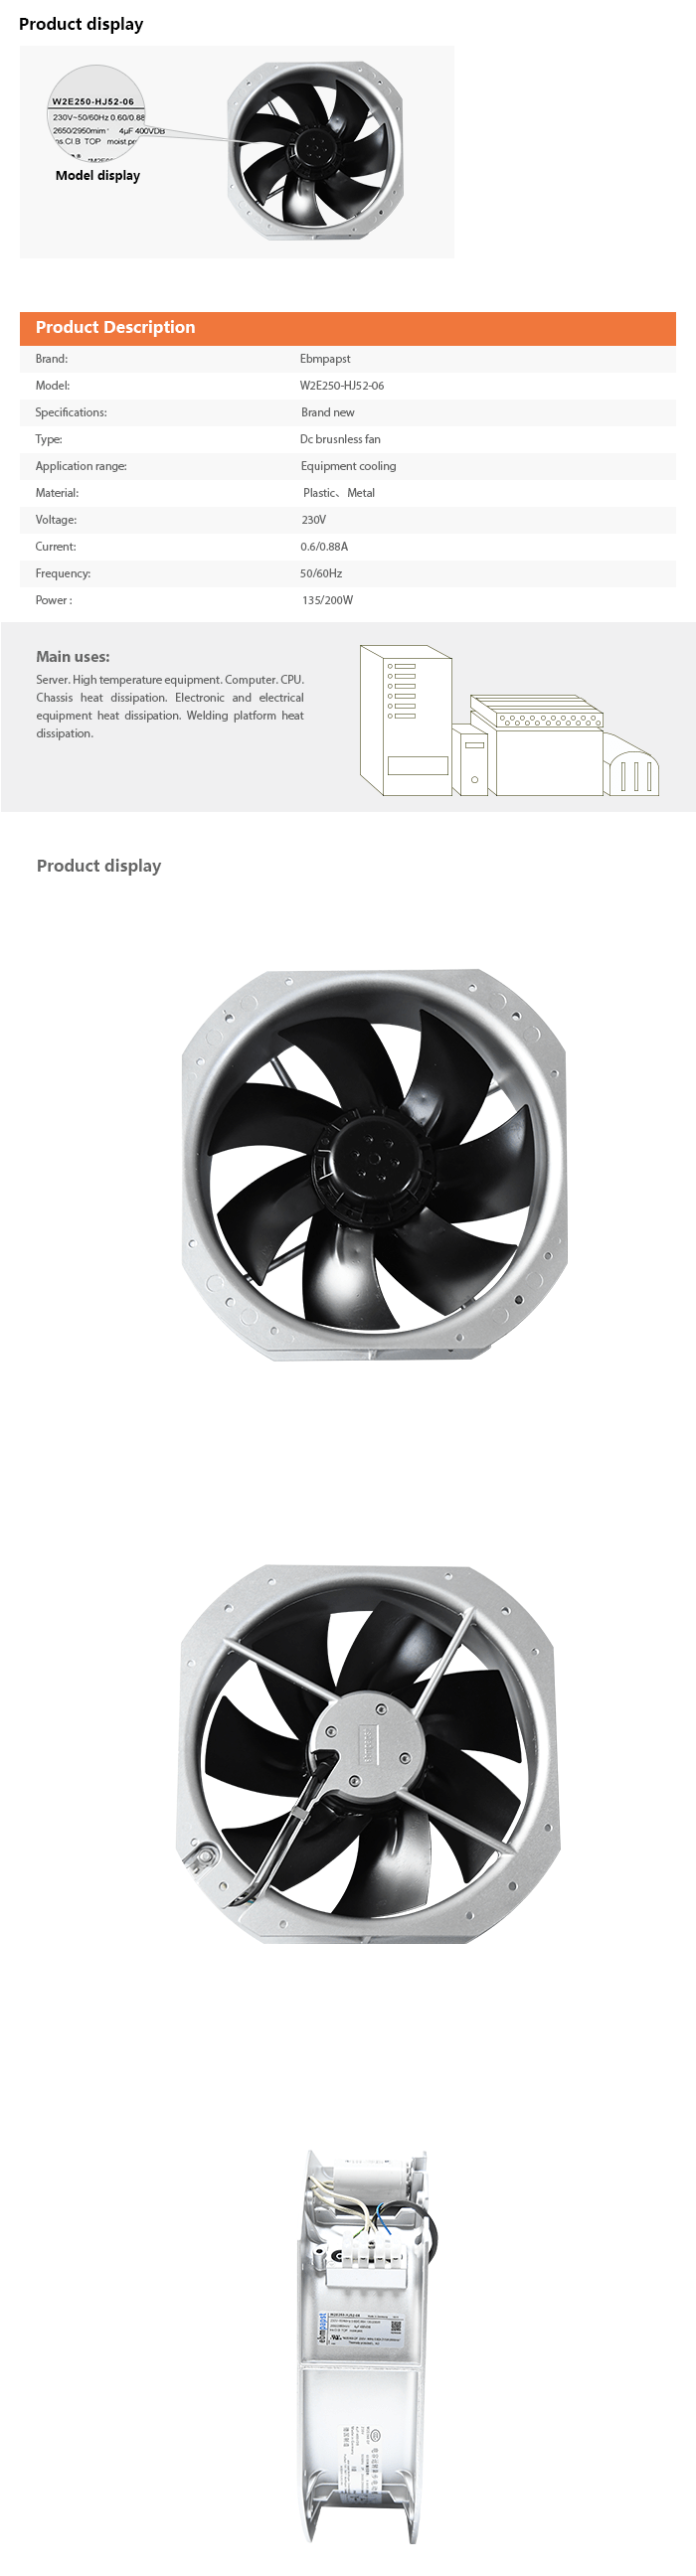 Ebmpapst Fan W2E250-HJ52-06